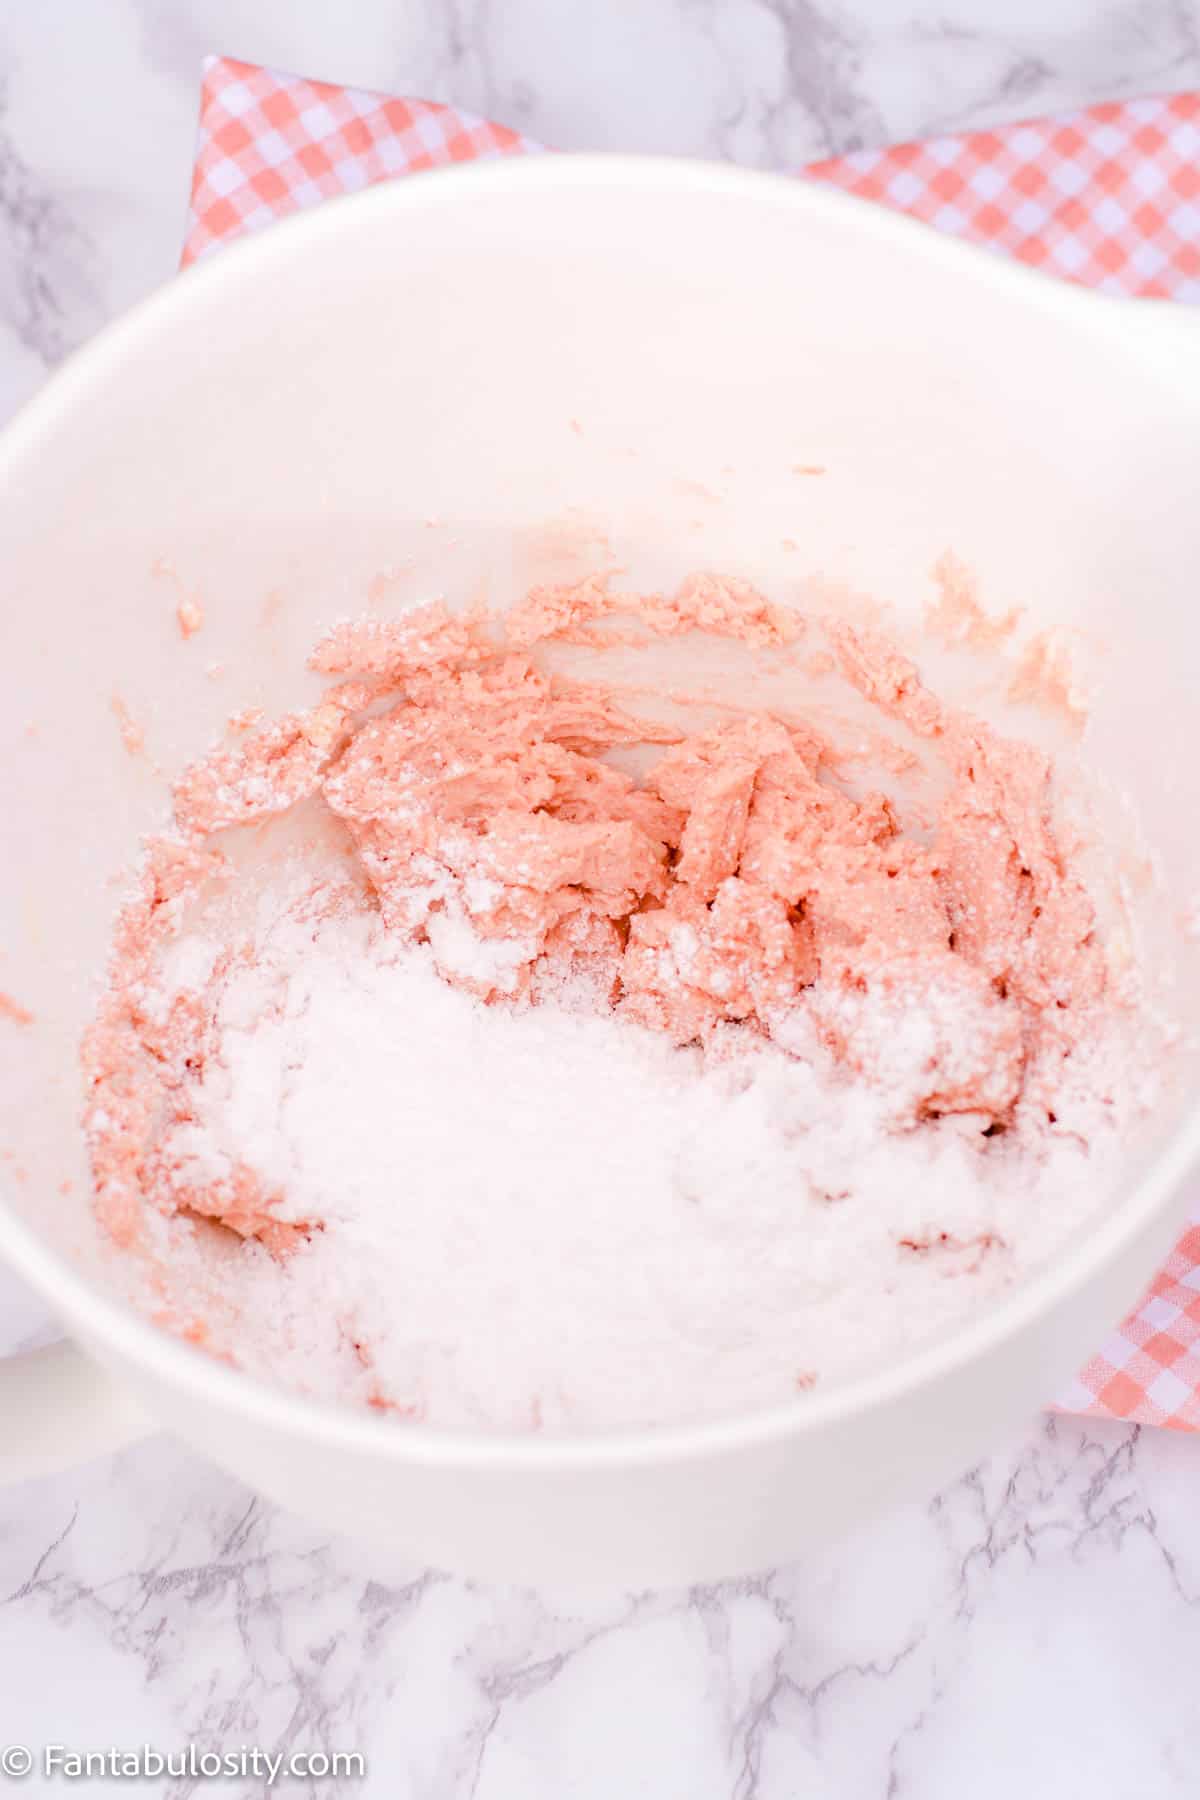 Add powdered sugar 